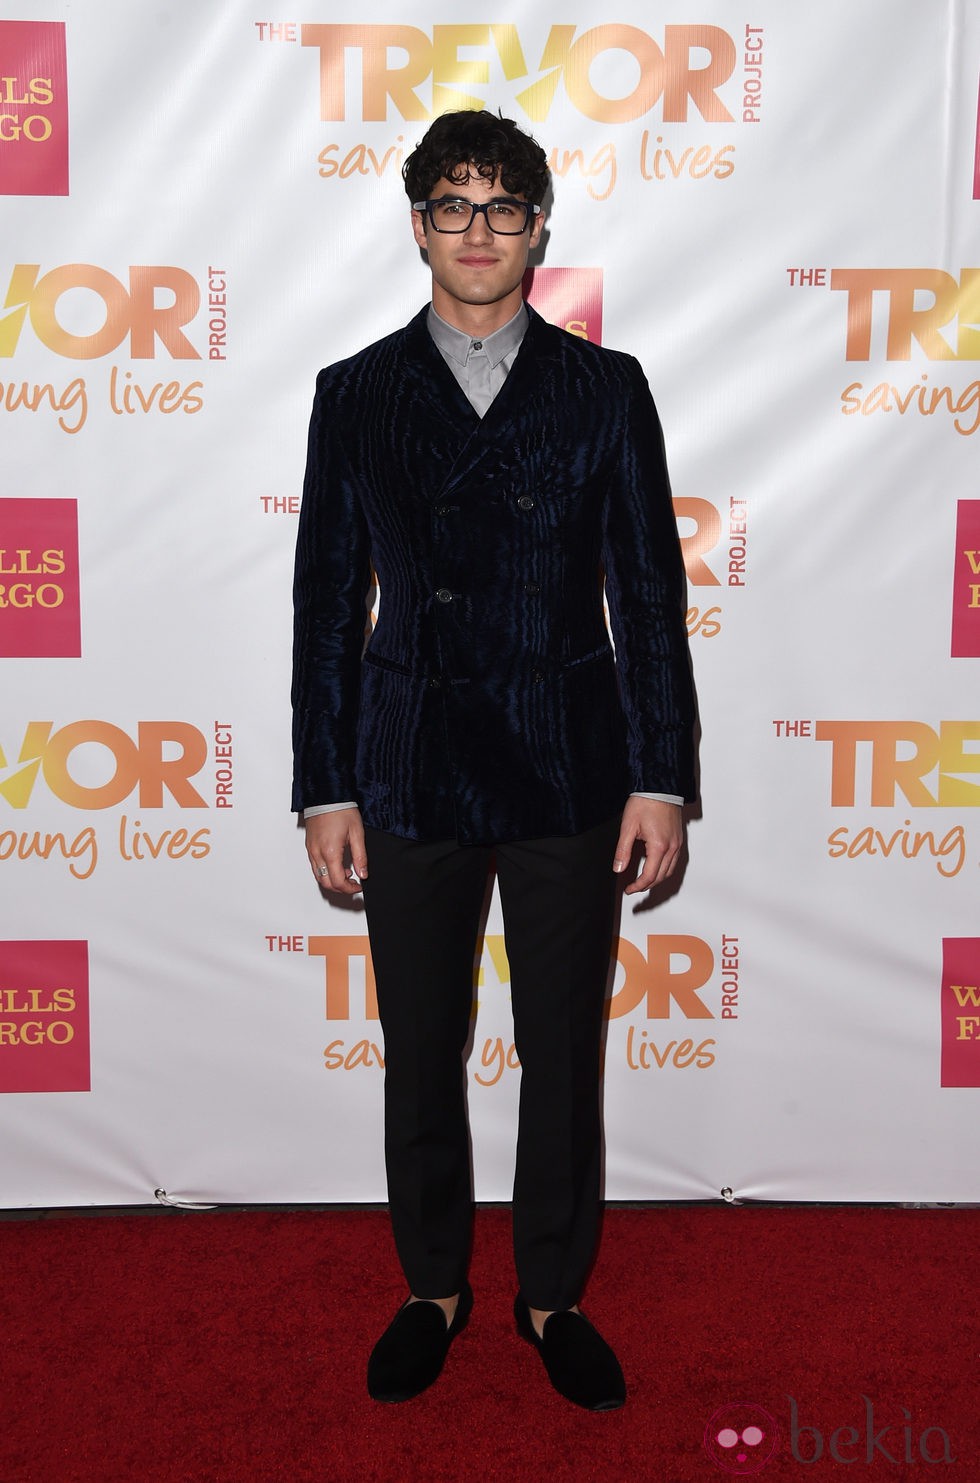 Darren Criss en la Gala Trevor Live 2014